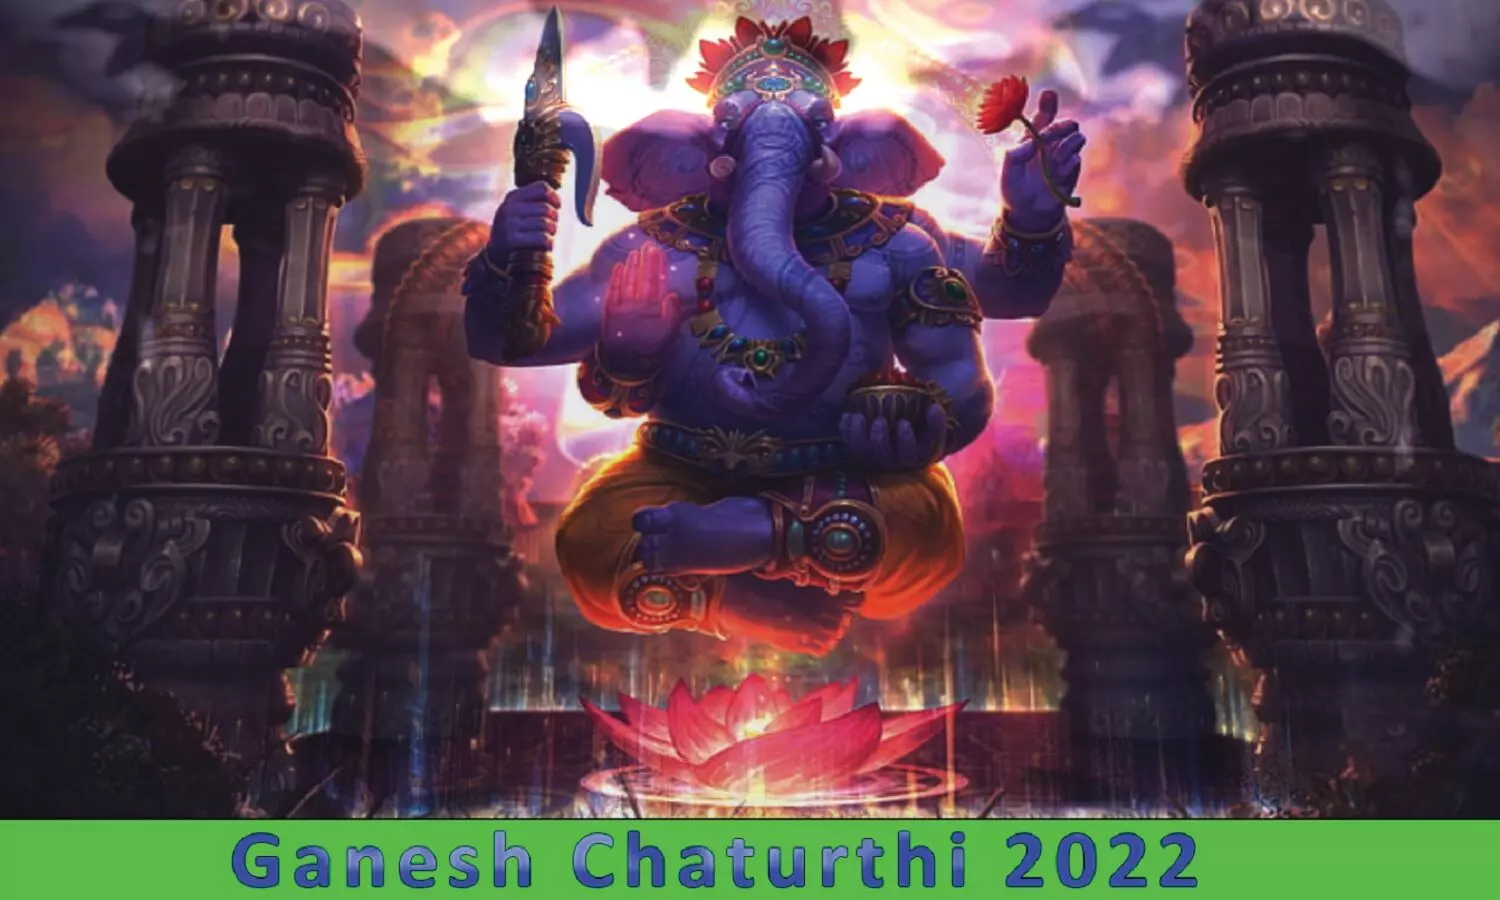 Ganesh Chaturthi 2022: गणेश चतुर्थी कब है? गणेश चतुर्थी शुभ मुहूर्त और स्थापना मन्त्र जानें